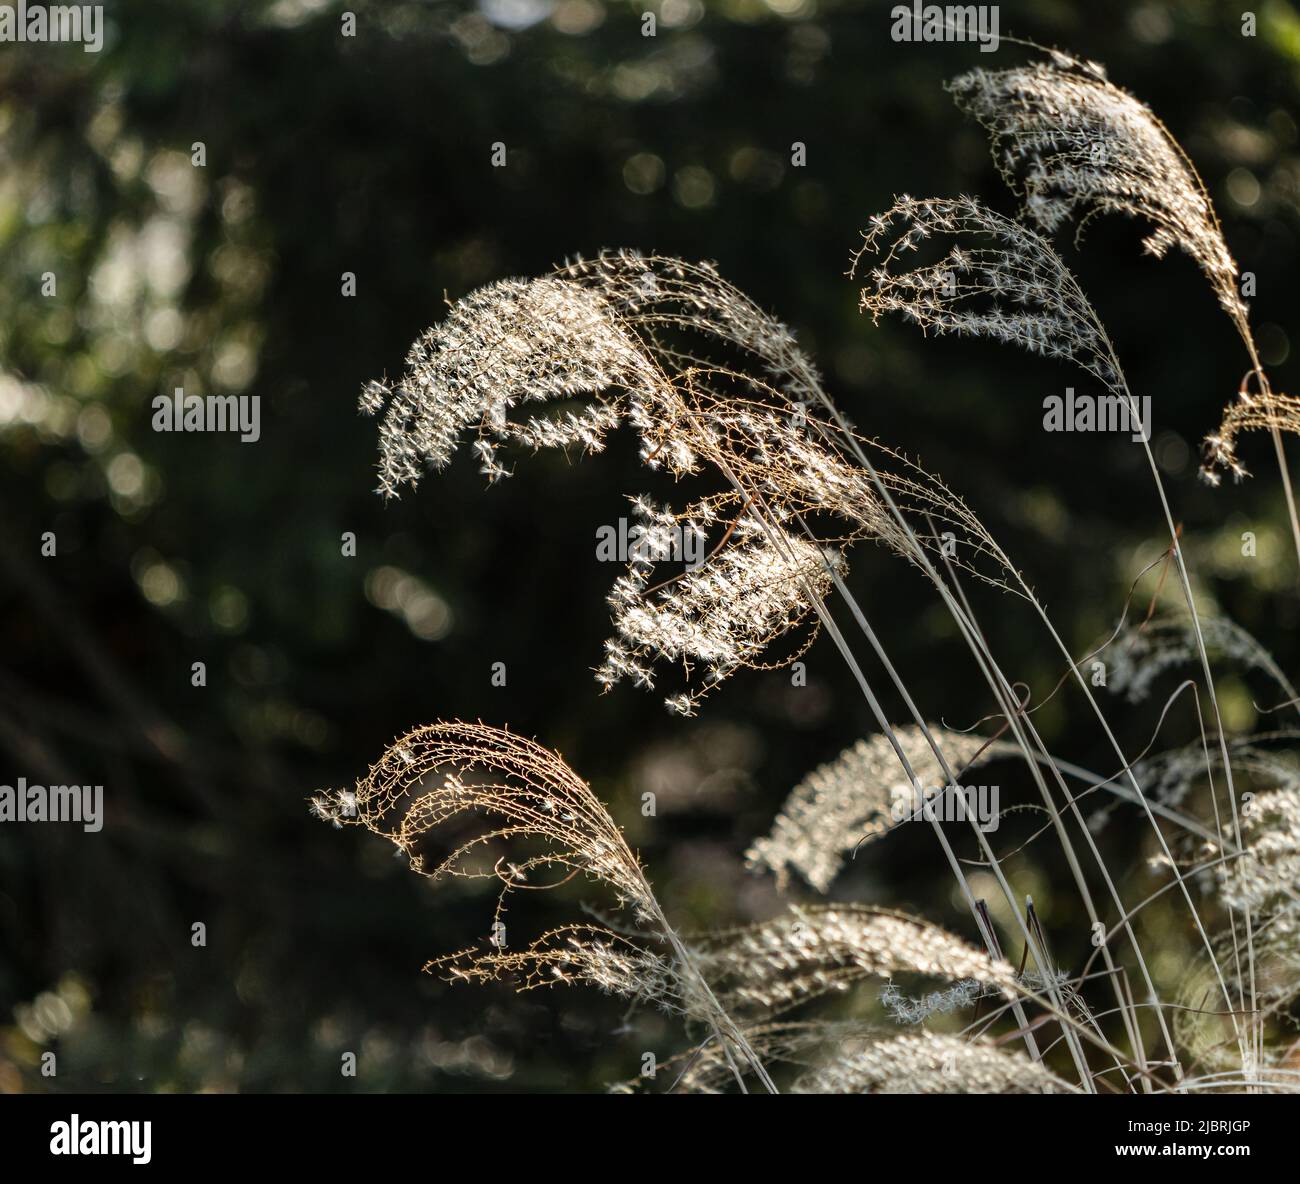 Gambi di erba ornamentale da fanciulla o huron sentinel, Miscanthus sinensis, che si illuminano alla luce del sole e soffiano nella brezza in primavera Foto Stock